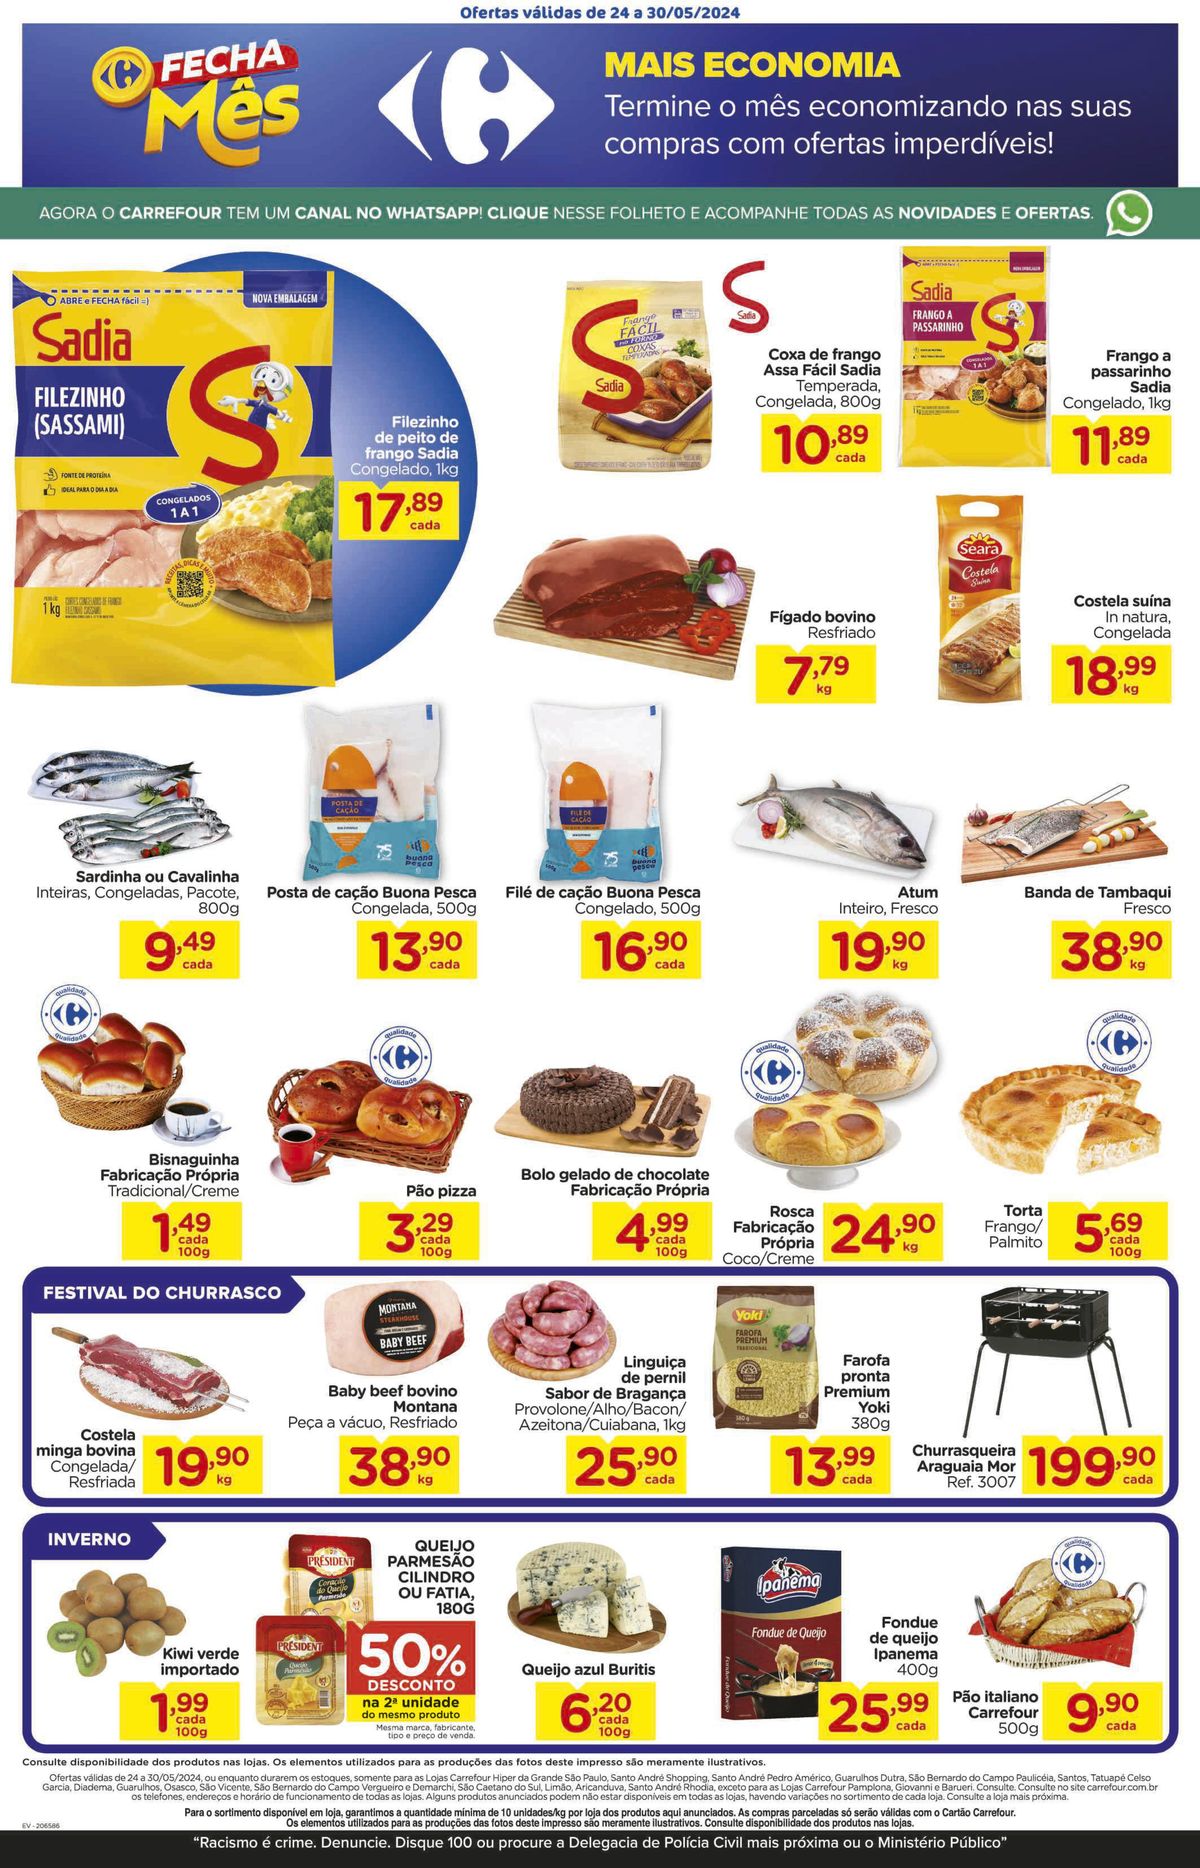 Ofertas de supermercado: carnes, peixes, pães e queijos